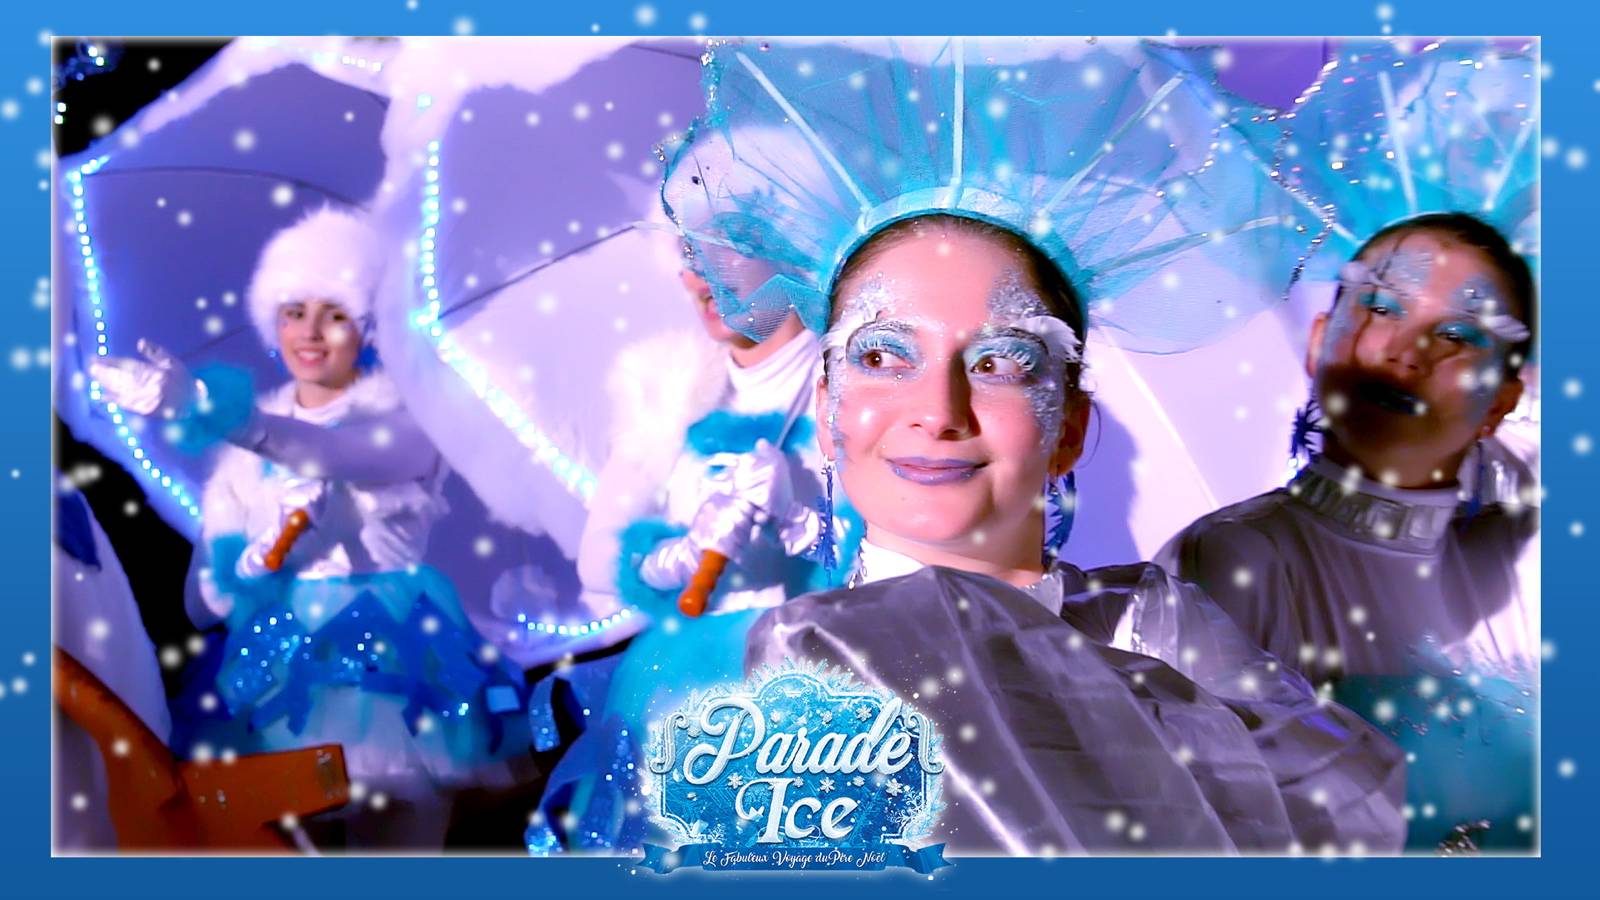 alt" parade ice"